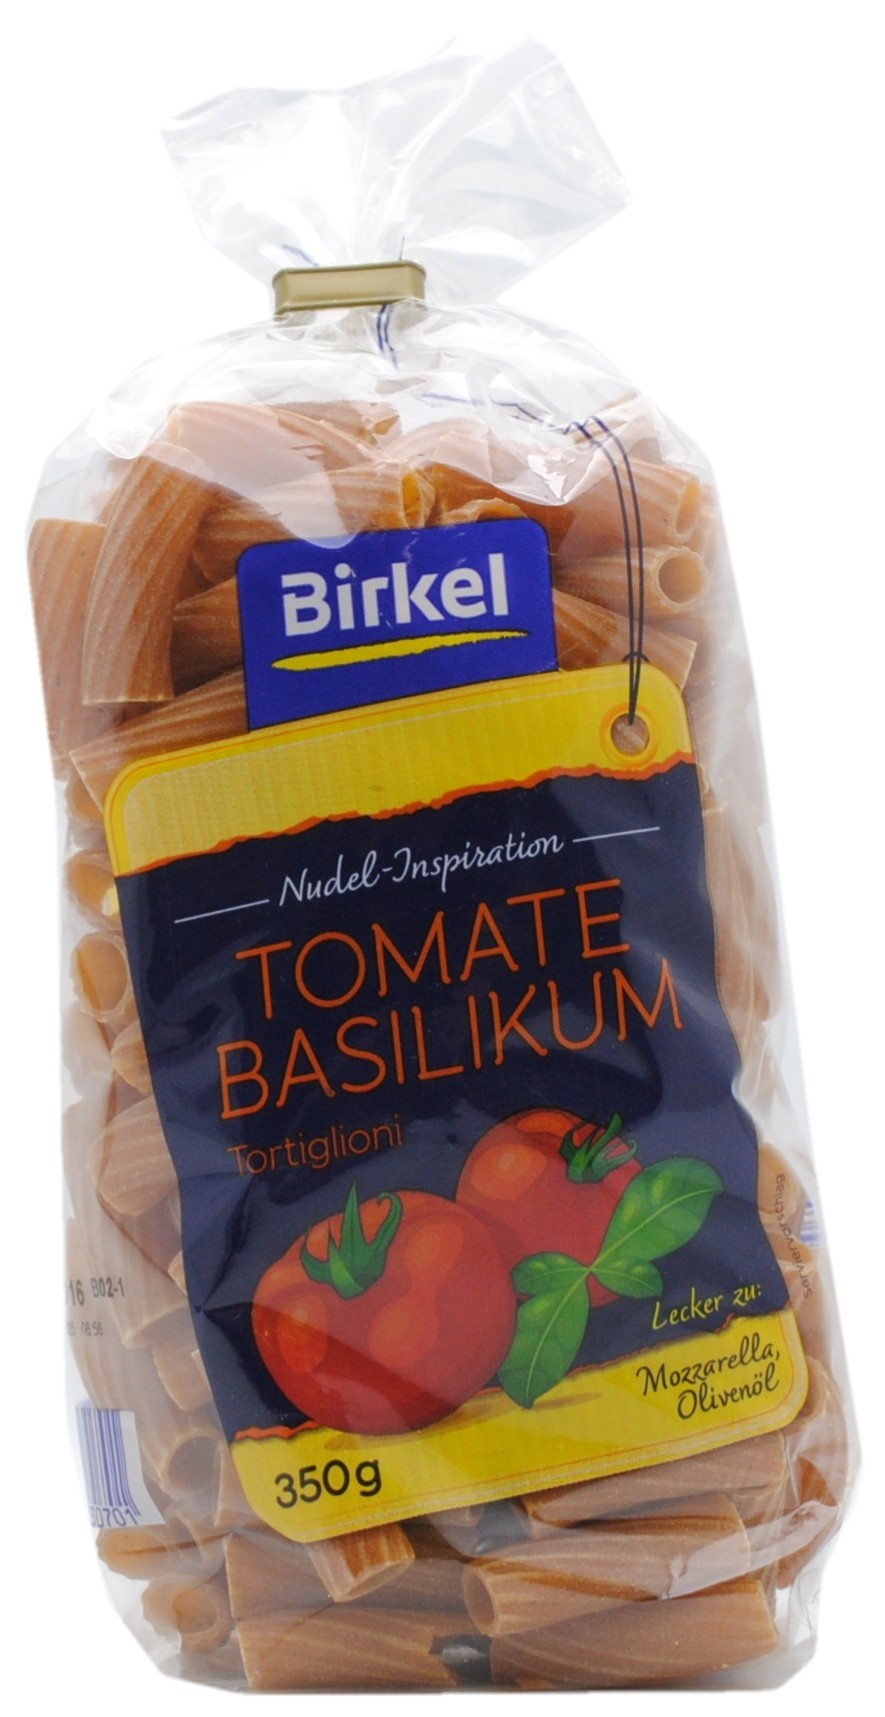 Tomato and Basil Tortiglioni